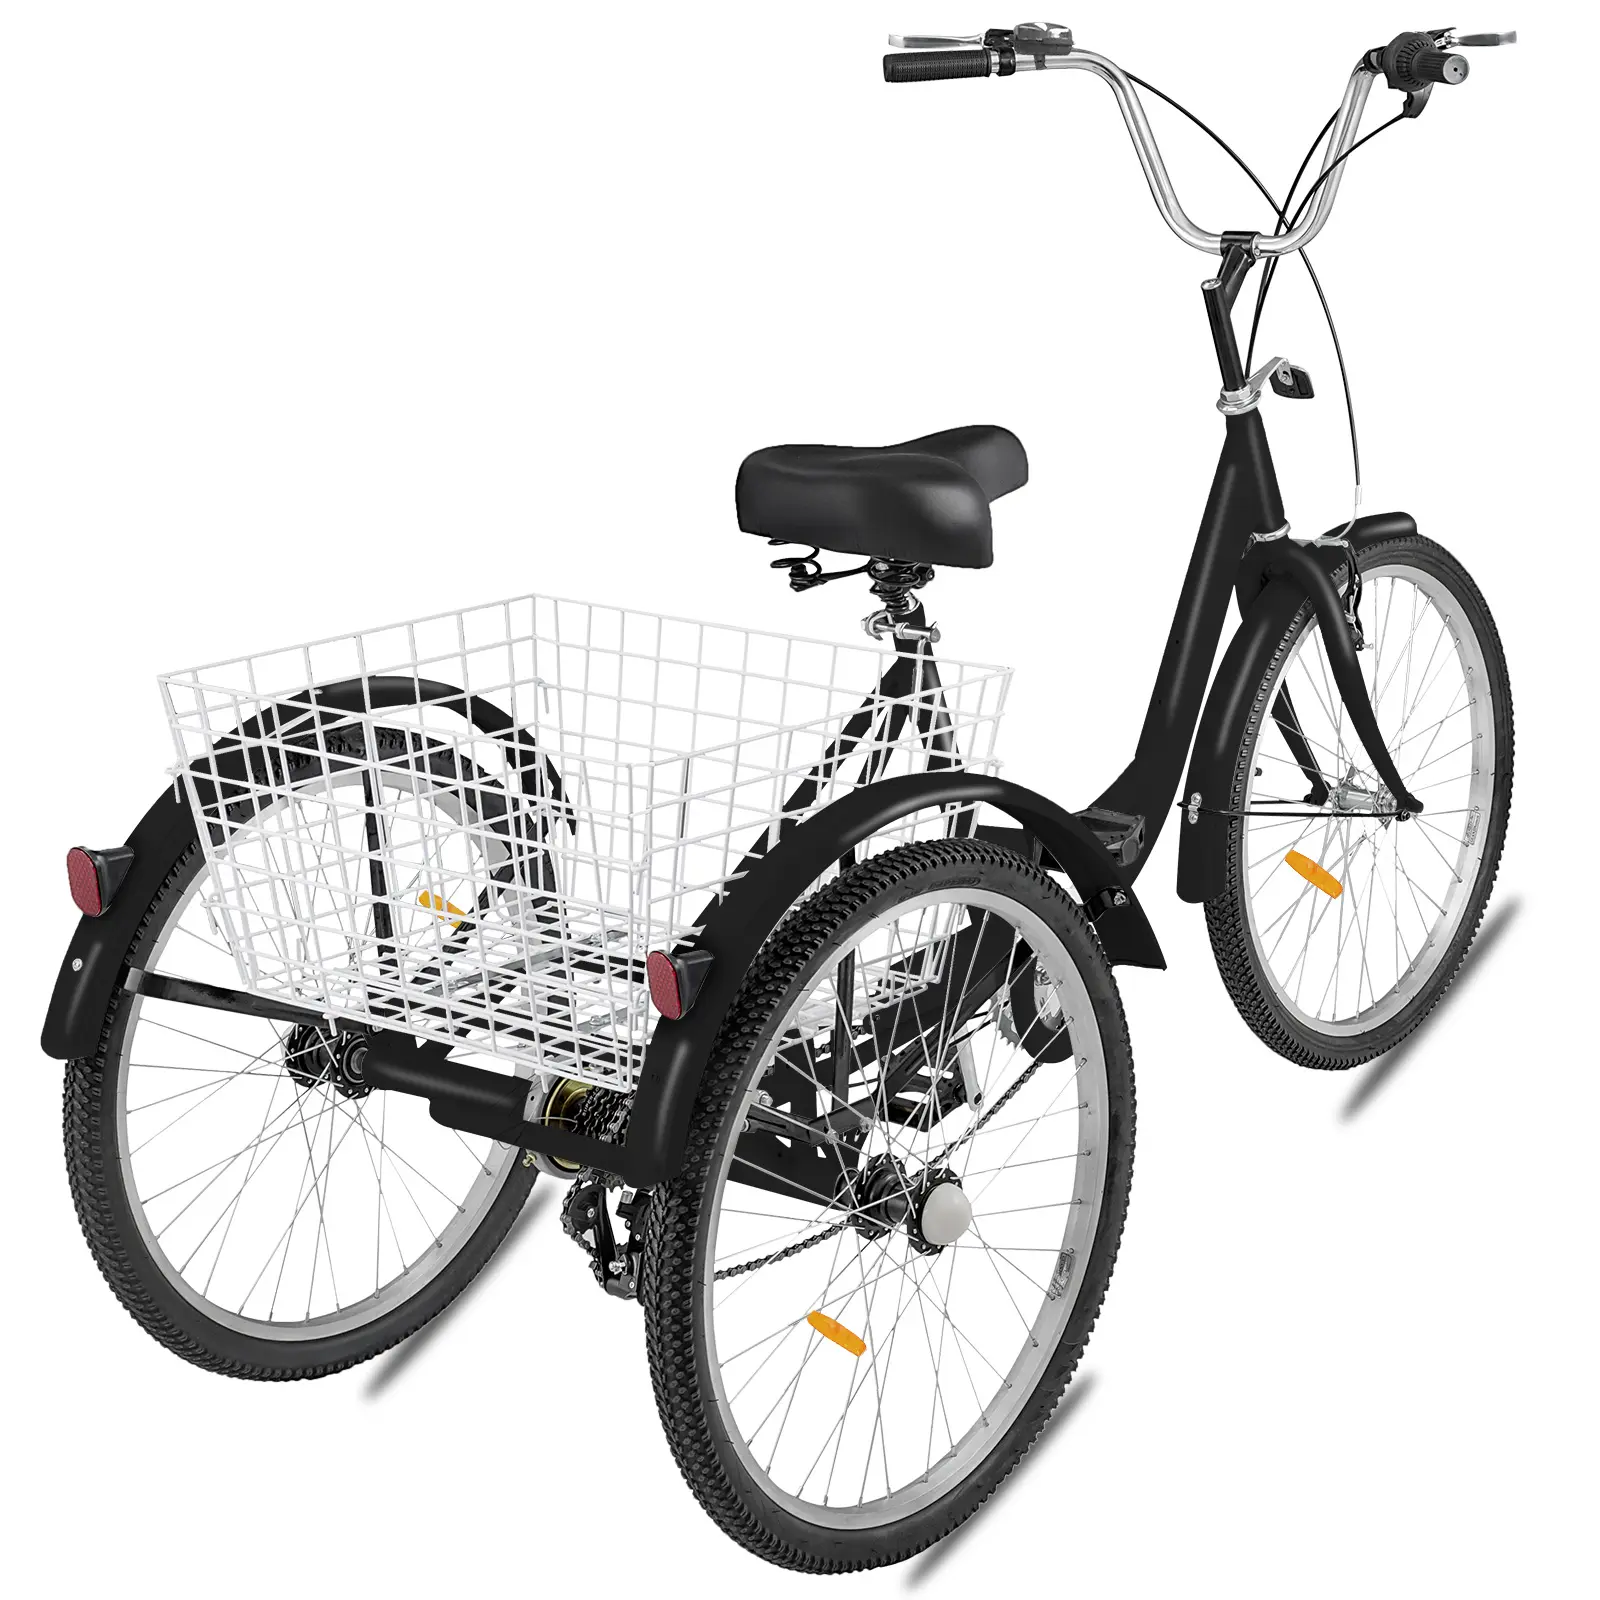 चीन 2020 3 पहिया इलेक्ट्रिक साइकिल तीन पहियों वयस्क कार्गो बिजली बाइक टोकरी के साथ